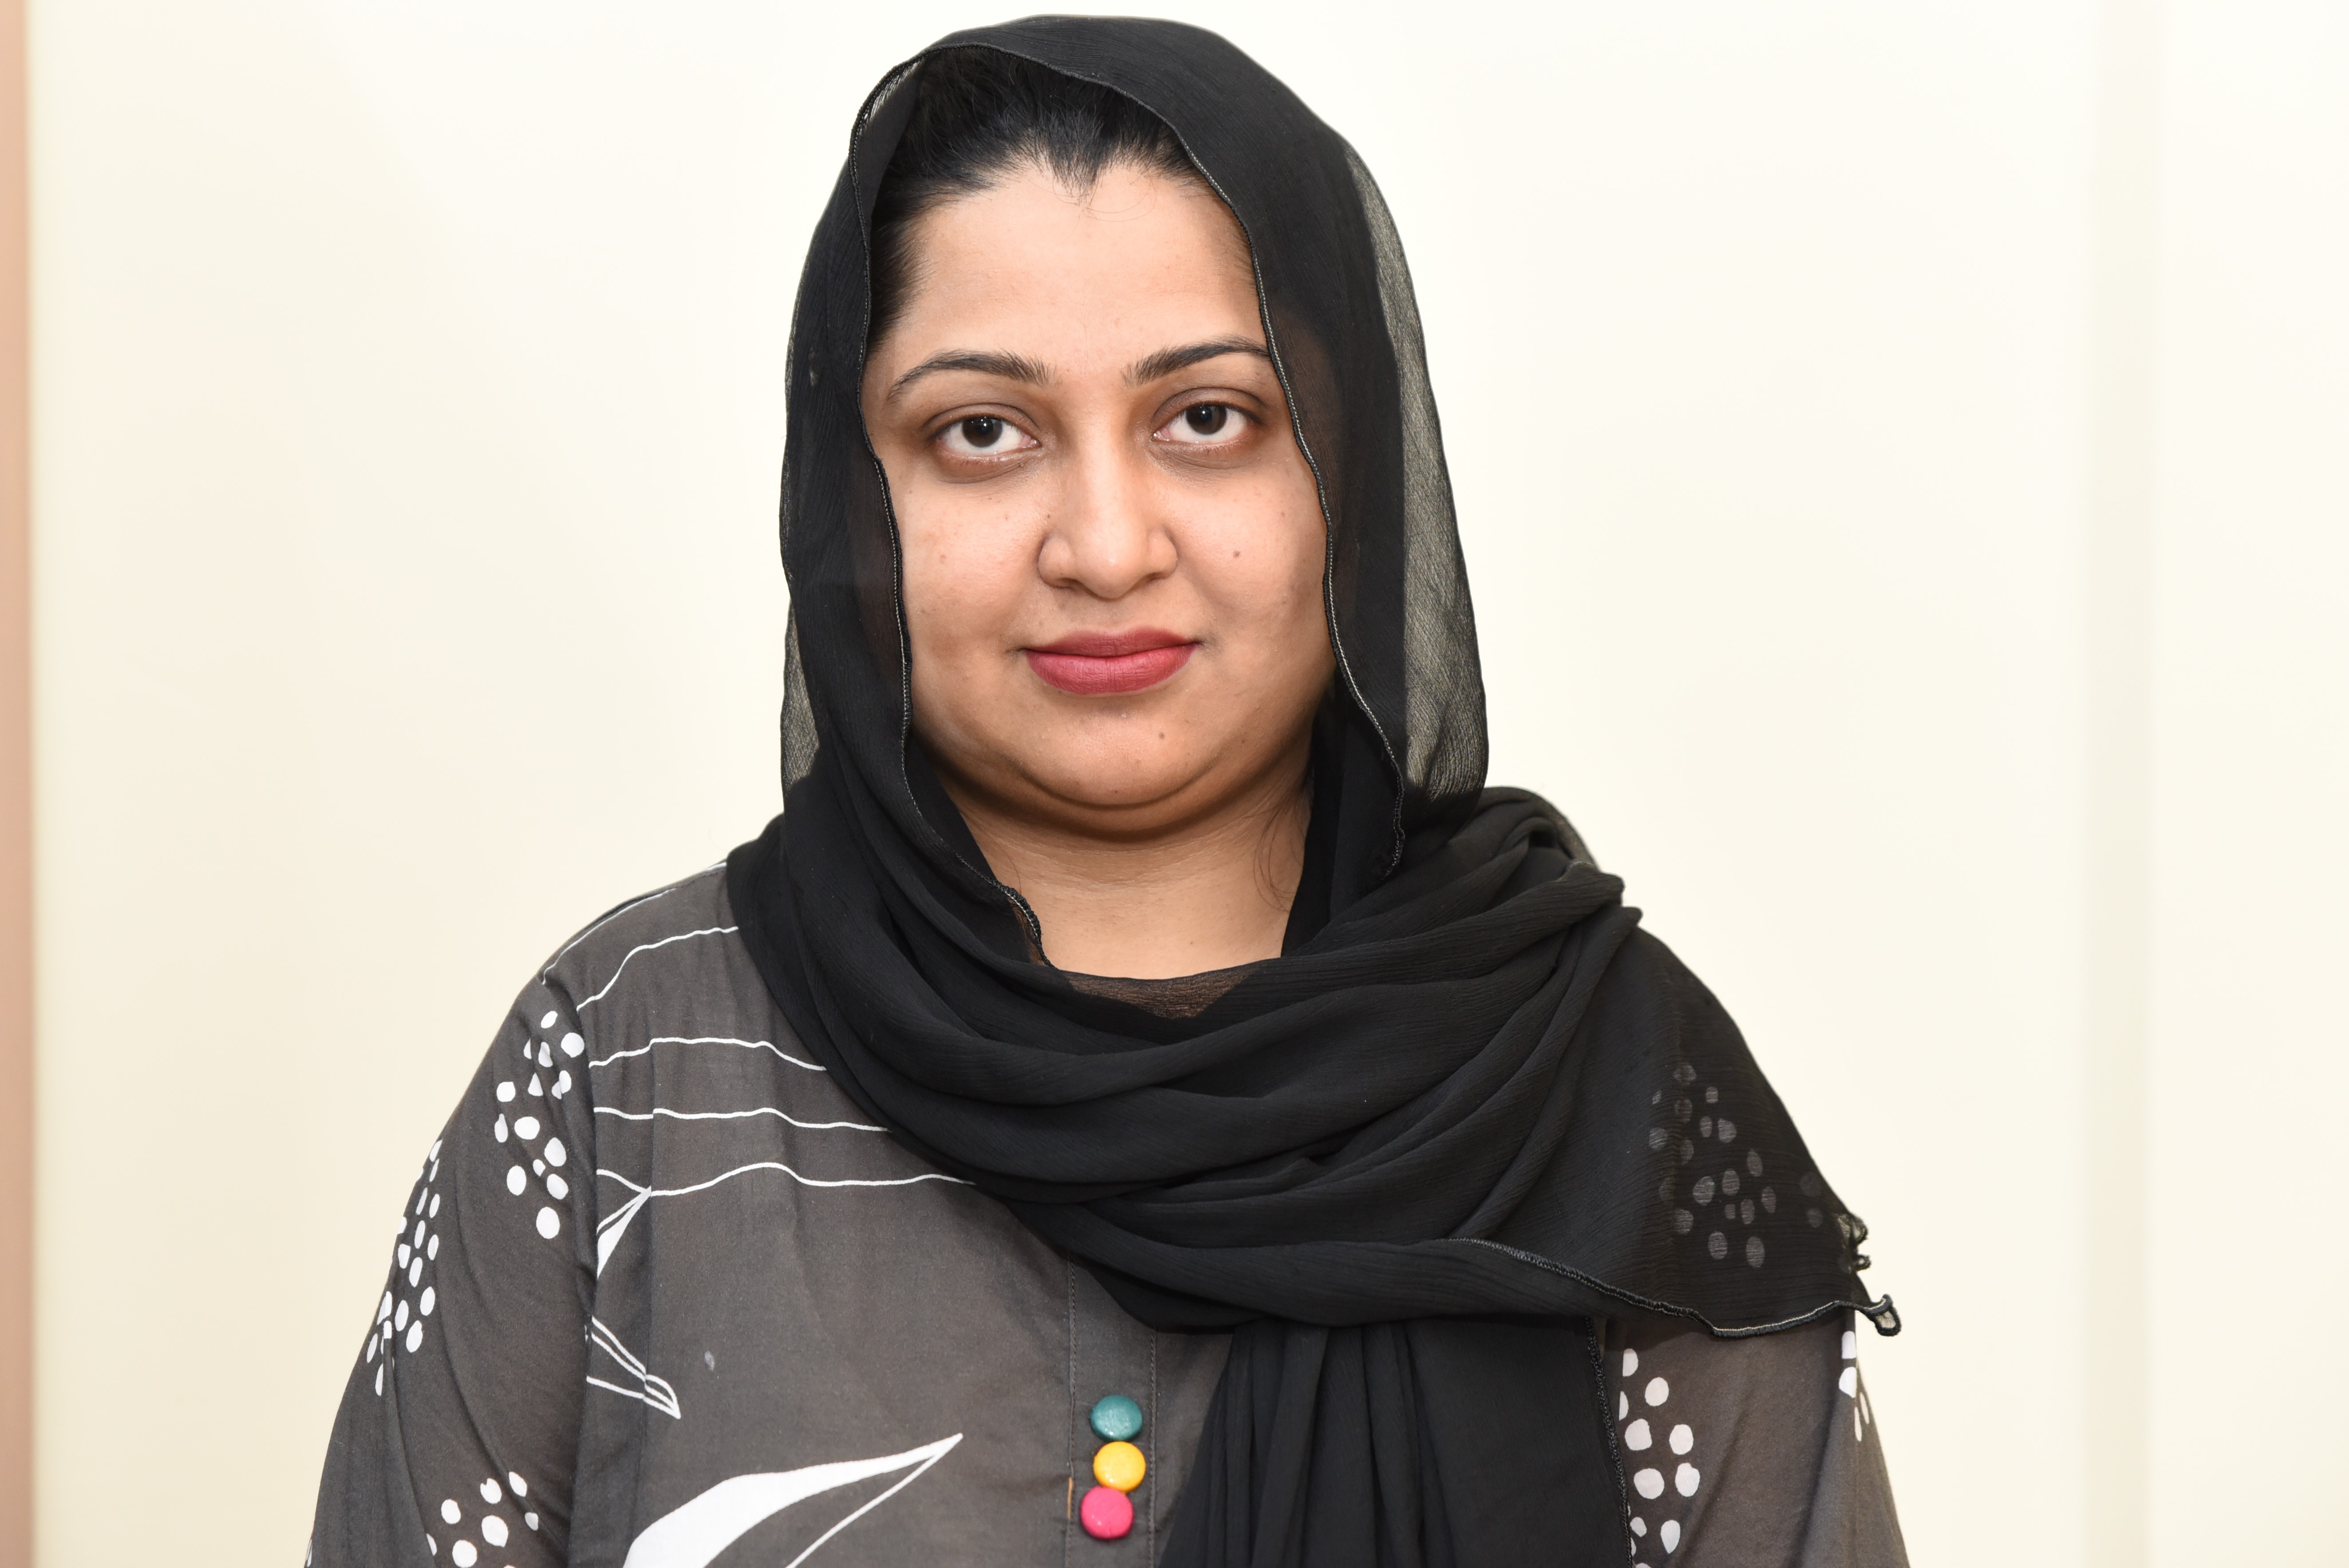 Ms. Rabia Azeem